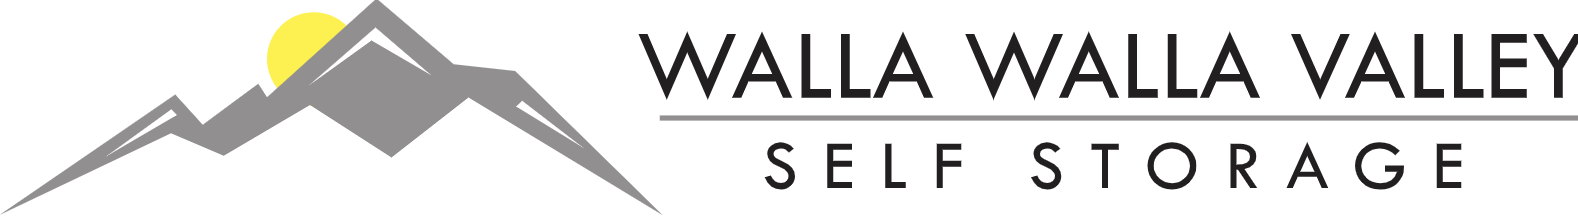 Walla Walla Valley Self Storage